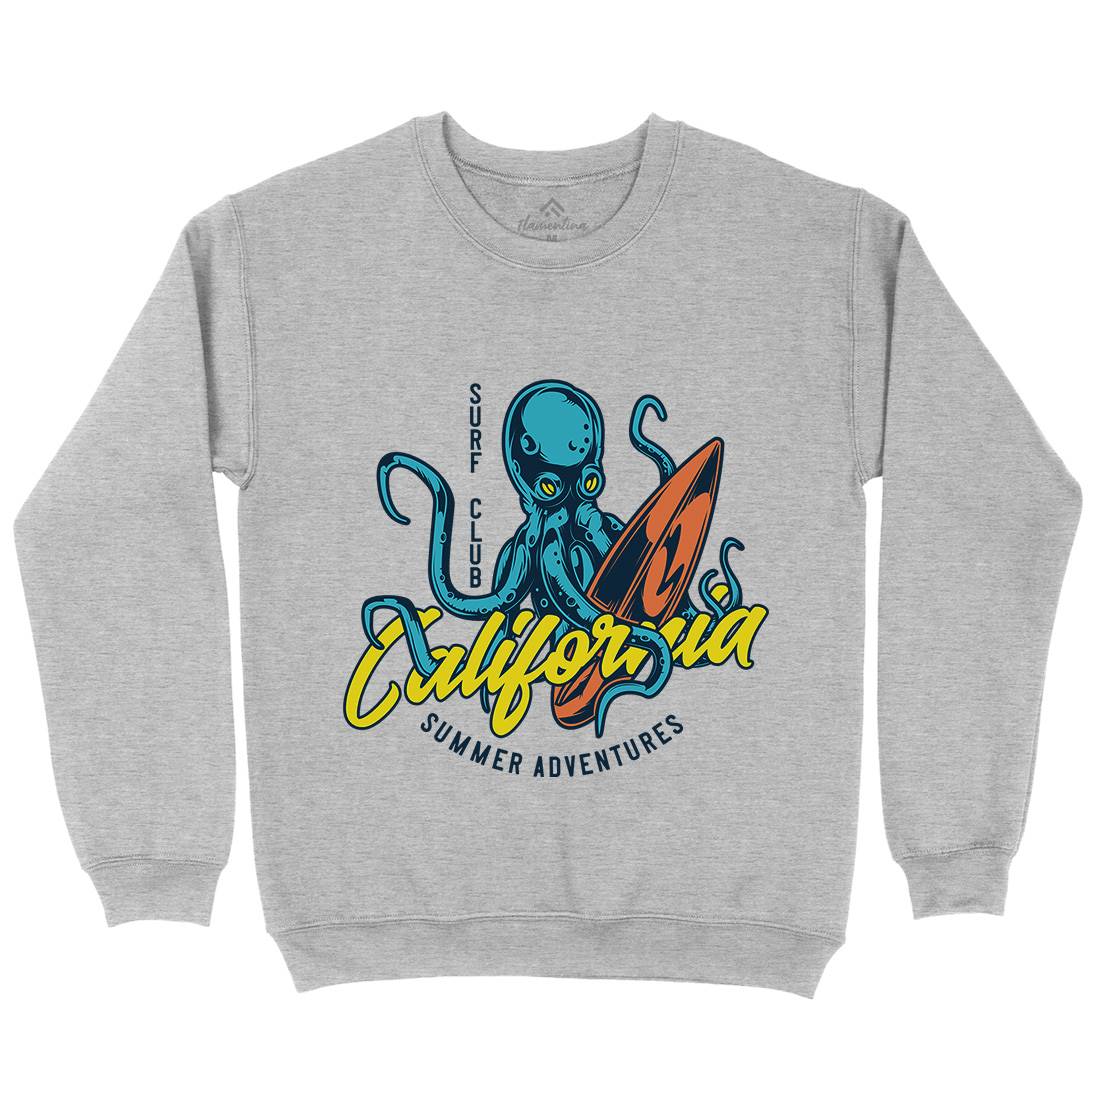 Octopus Surfing Kids Crew Neck Sweatshirt Surf B348